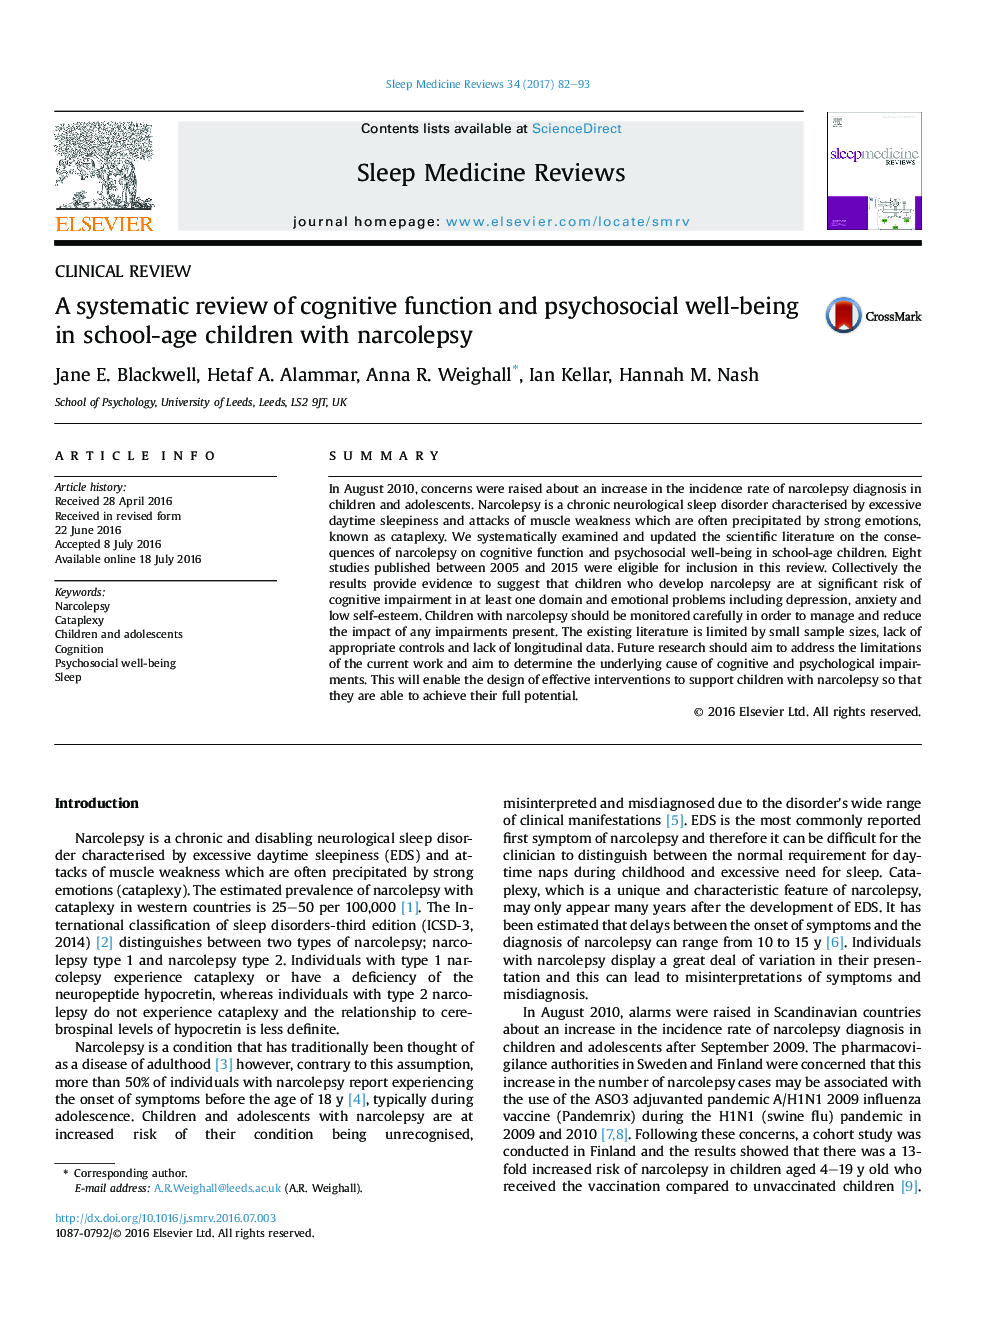 بررسی بالینی بررسی سیستماتیک عملکرد شناختی و رفاه روانی و اجتماعی کودکان مبتلا به نارکولپسی 